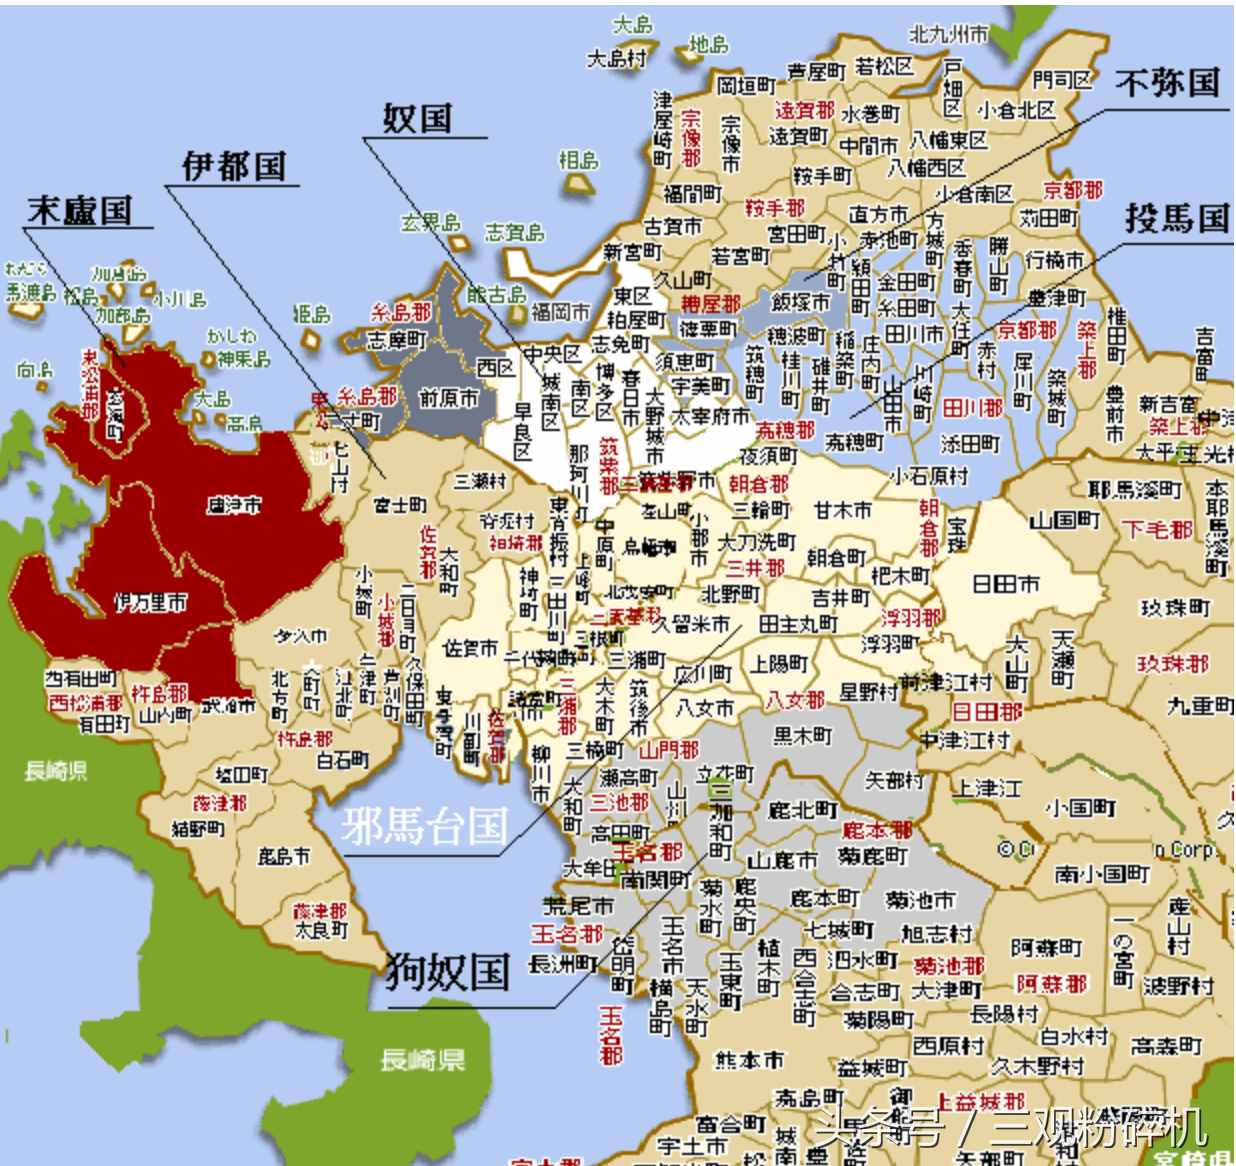 日本为什么自称大和民族，这两个字是他们从一部中国古籍翻出来的